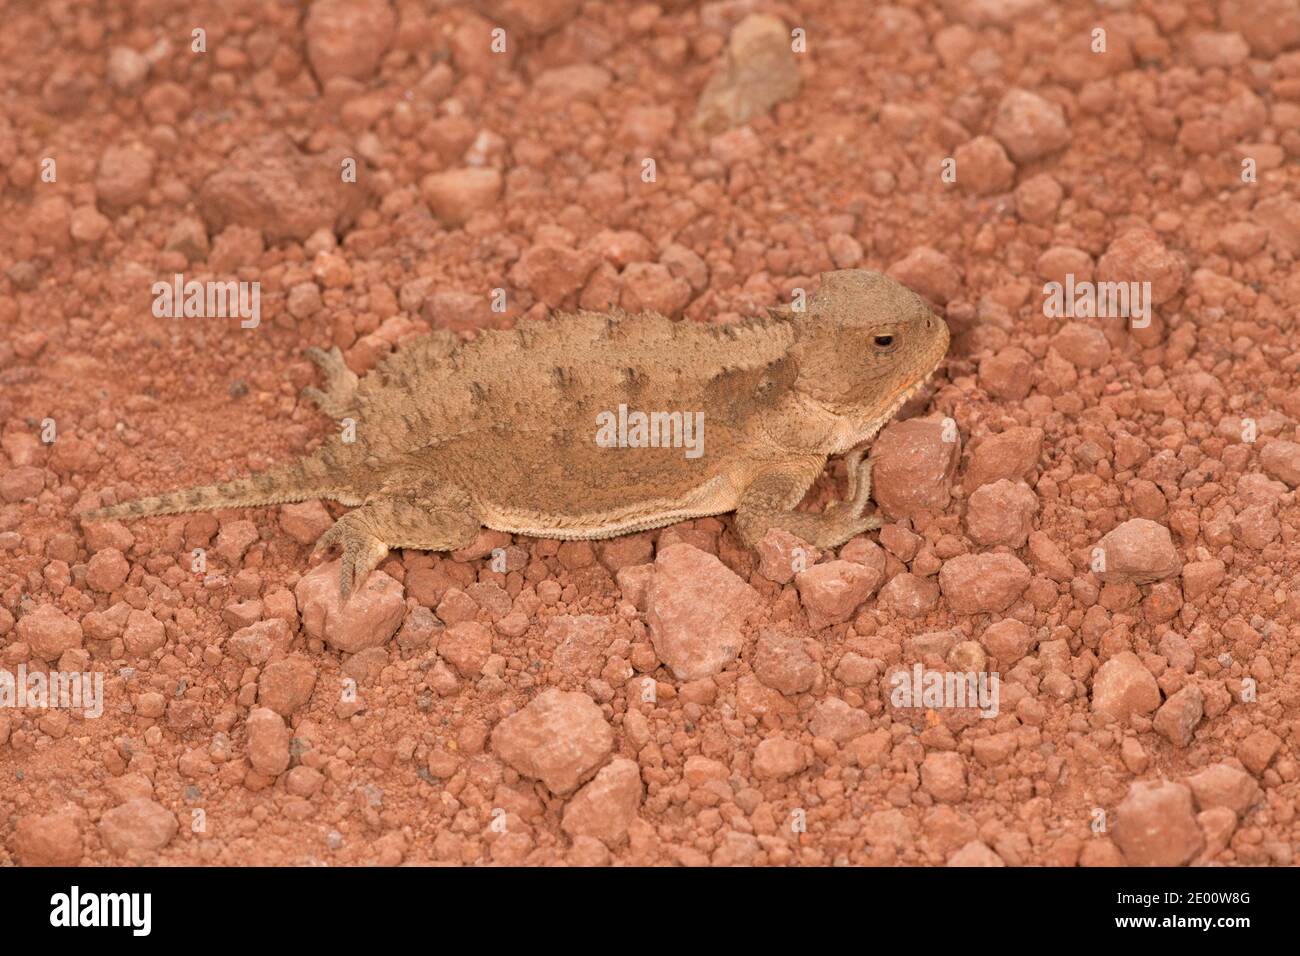 Greater Short-horned Lizard, Phrynosoma hernandesi, Phrynosomatinae, Iguanidae. Stock Photo